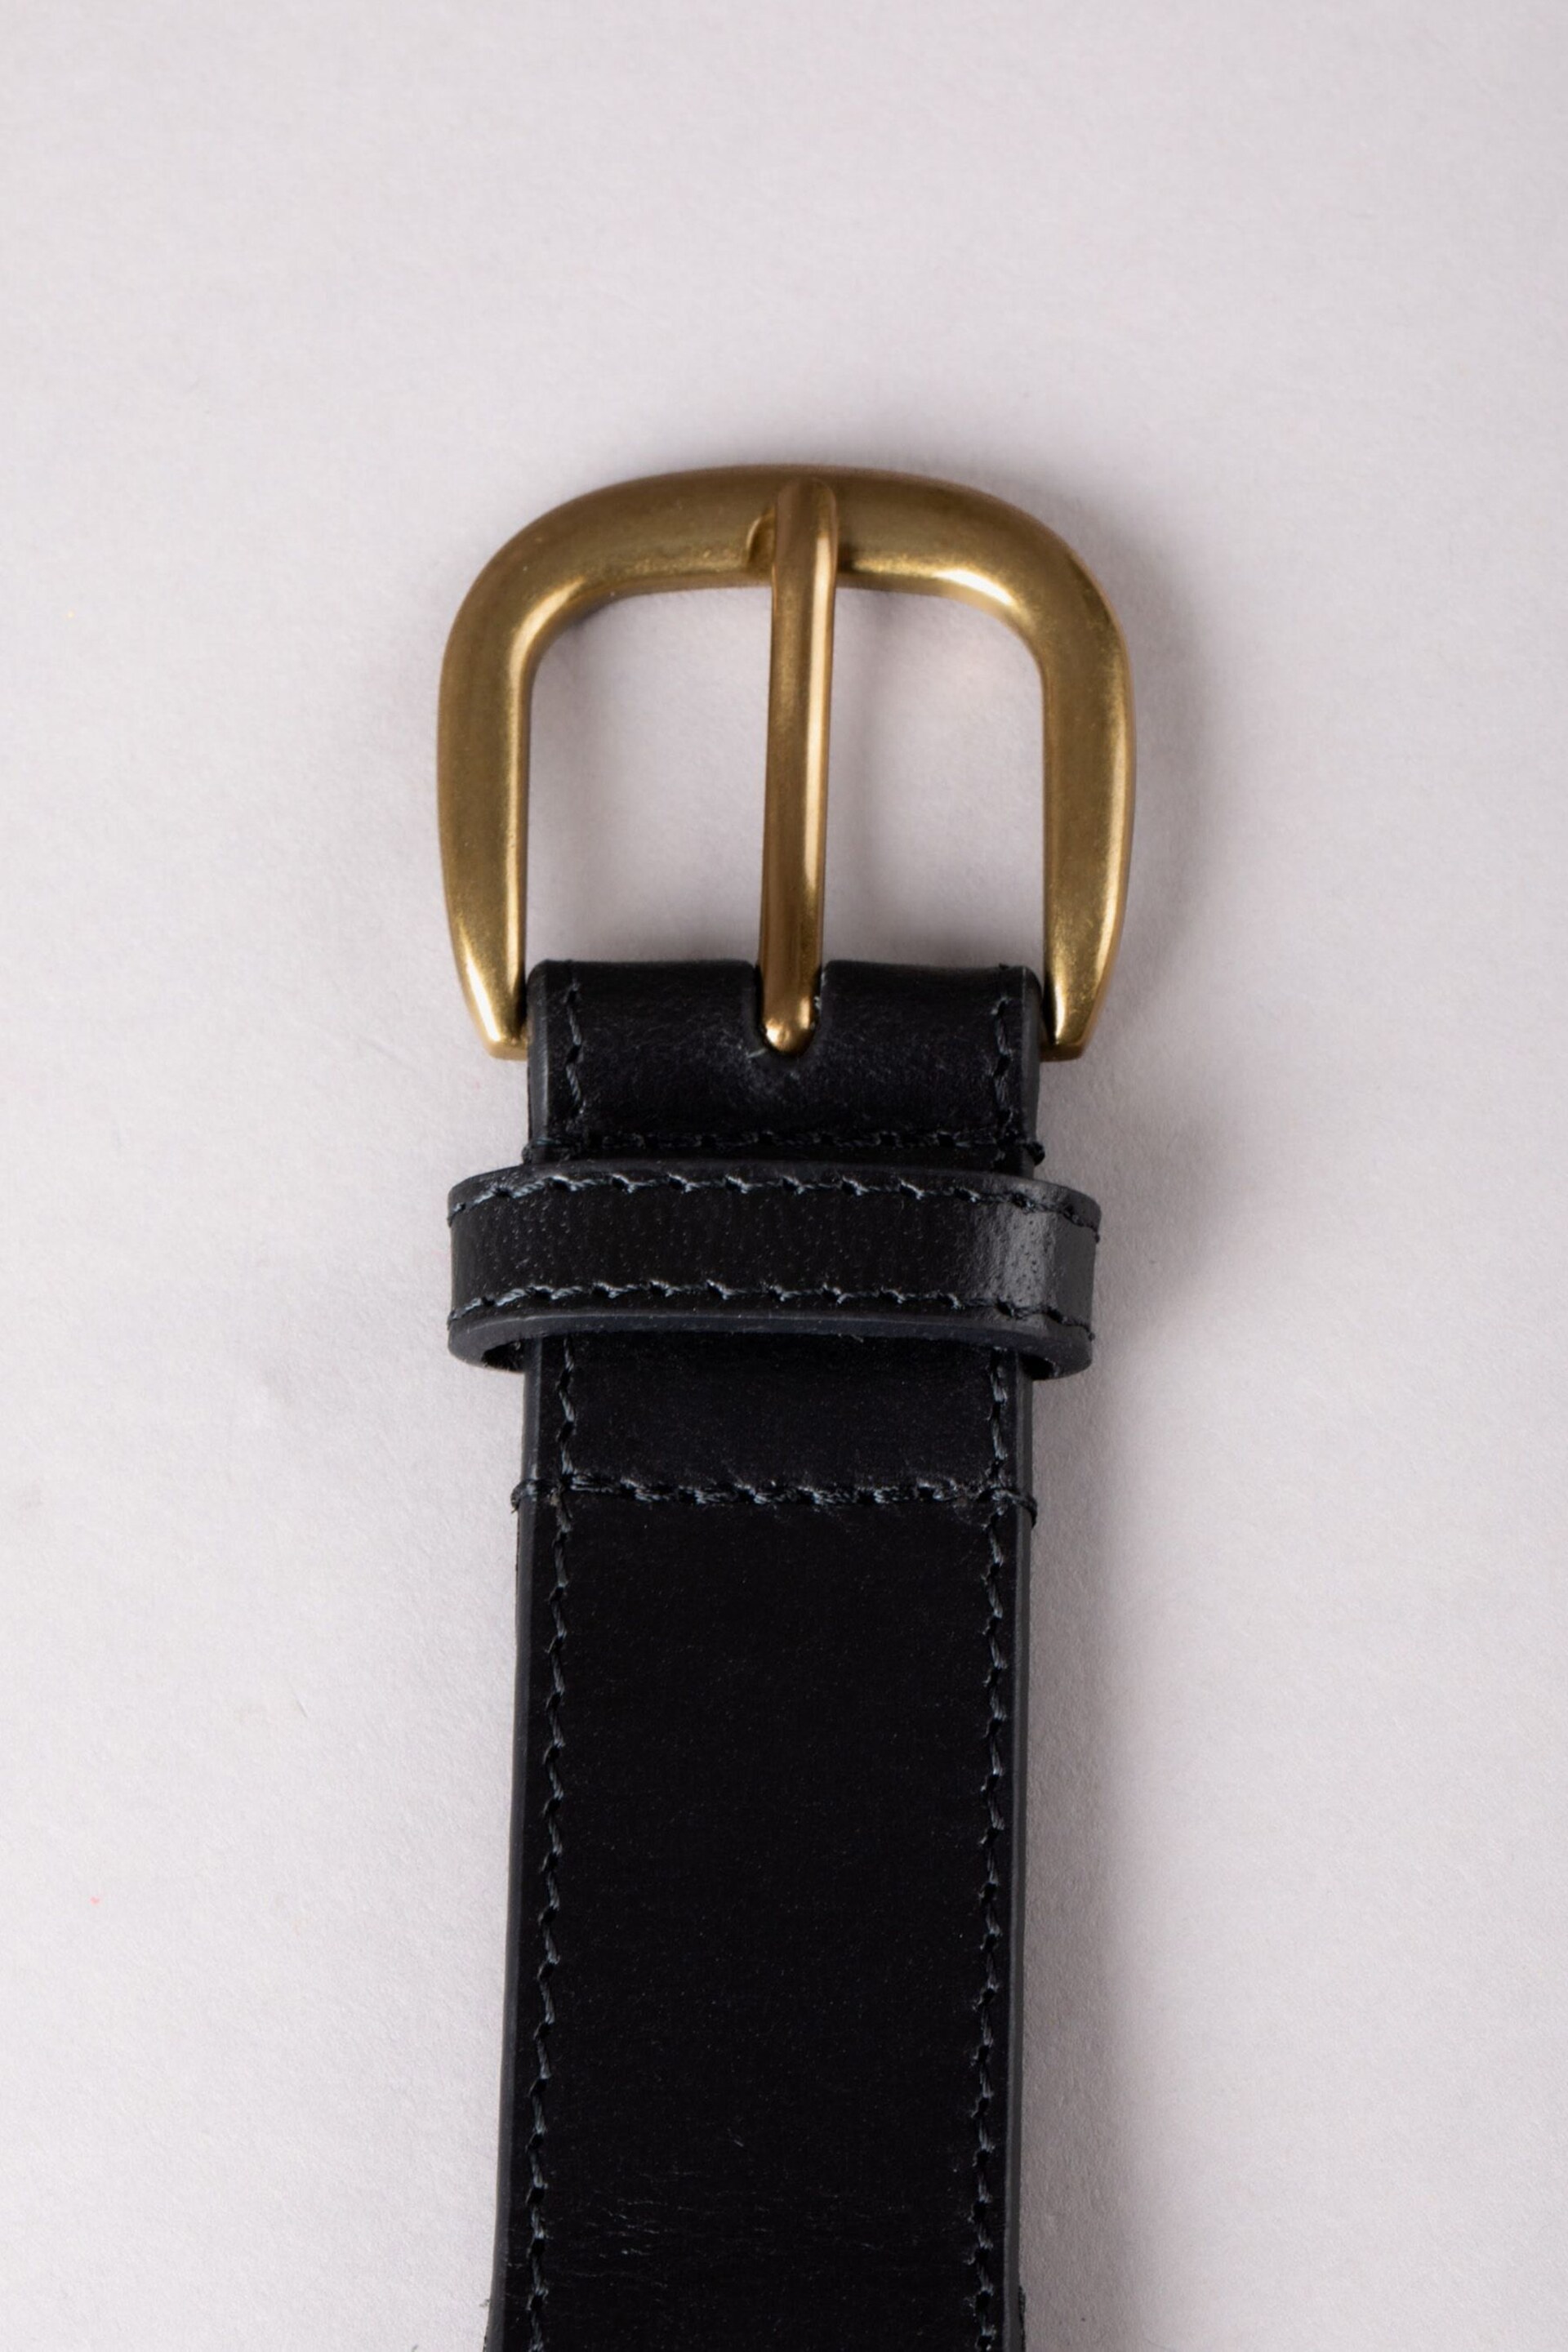 Lakeland Leather Black Wray Whip Stitch Leather Belt - Image 3 of 3